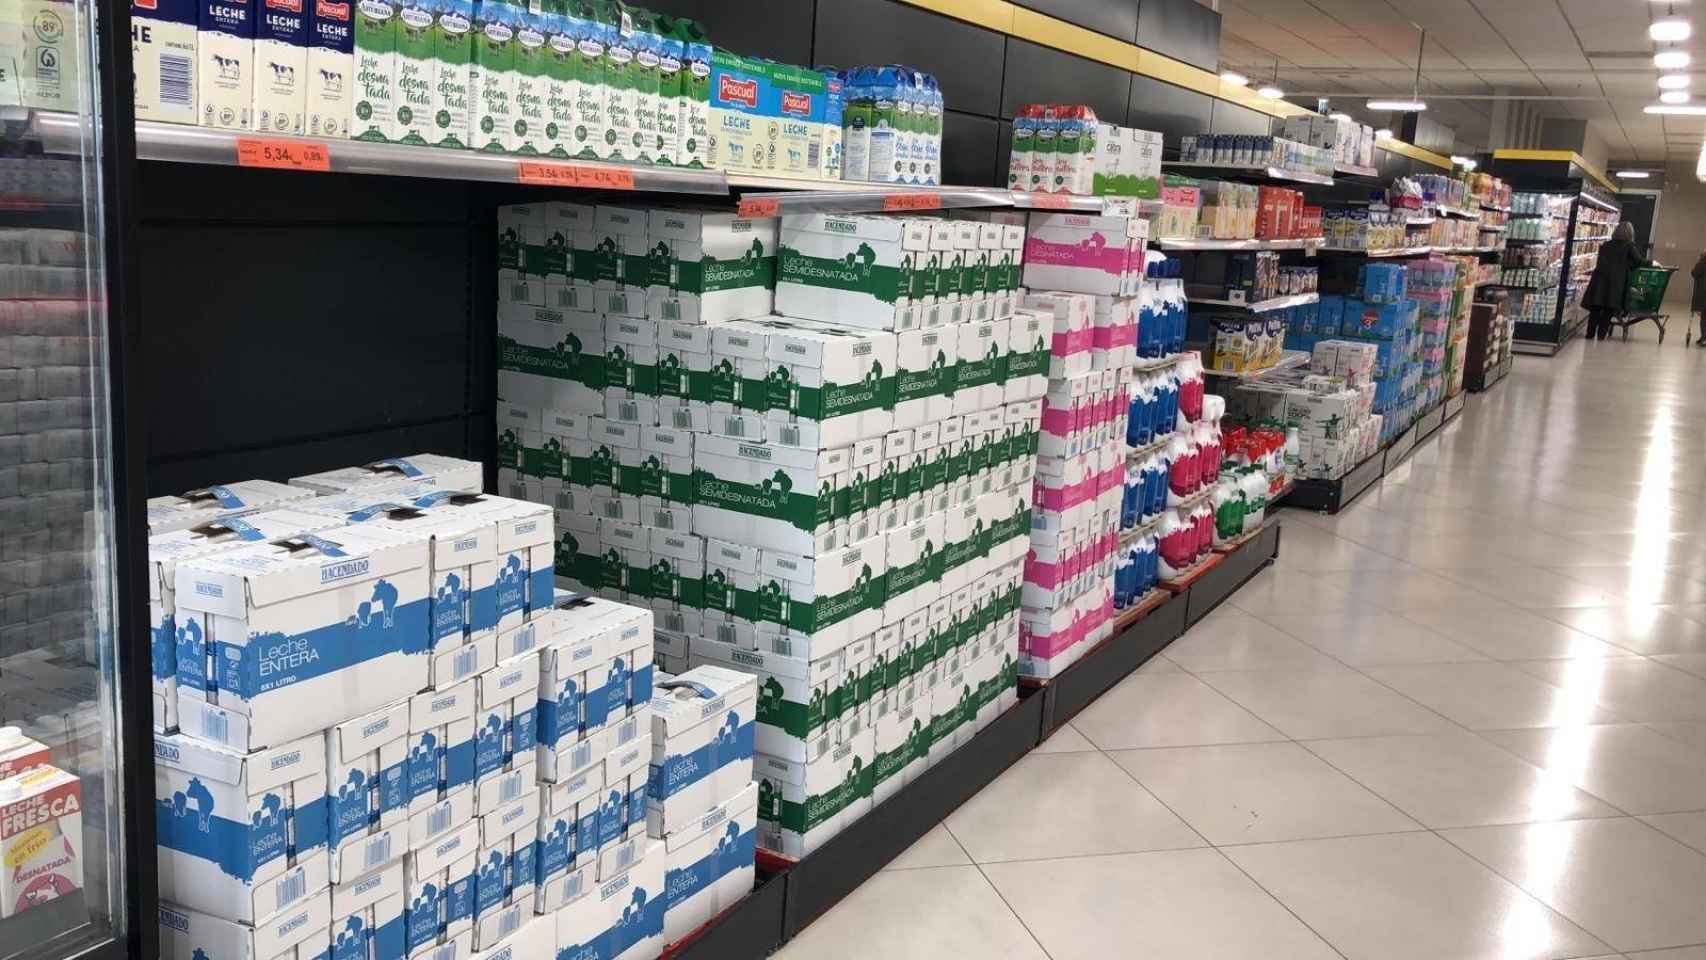 Lineal leche supermercado.